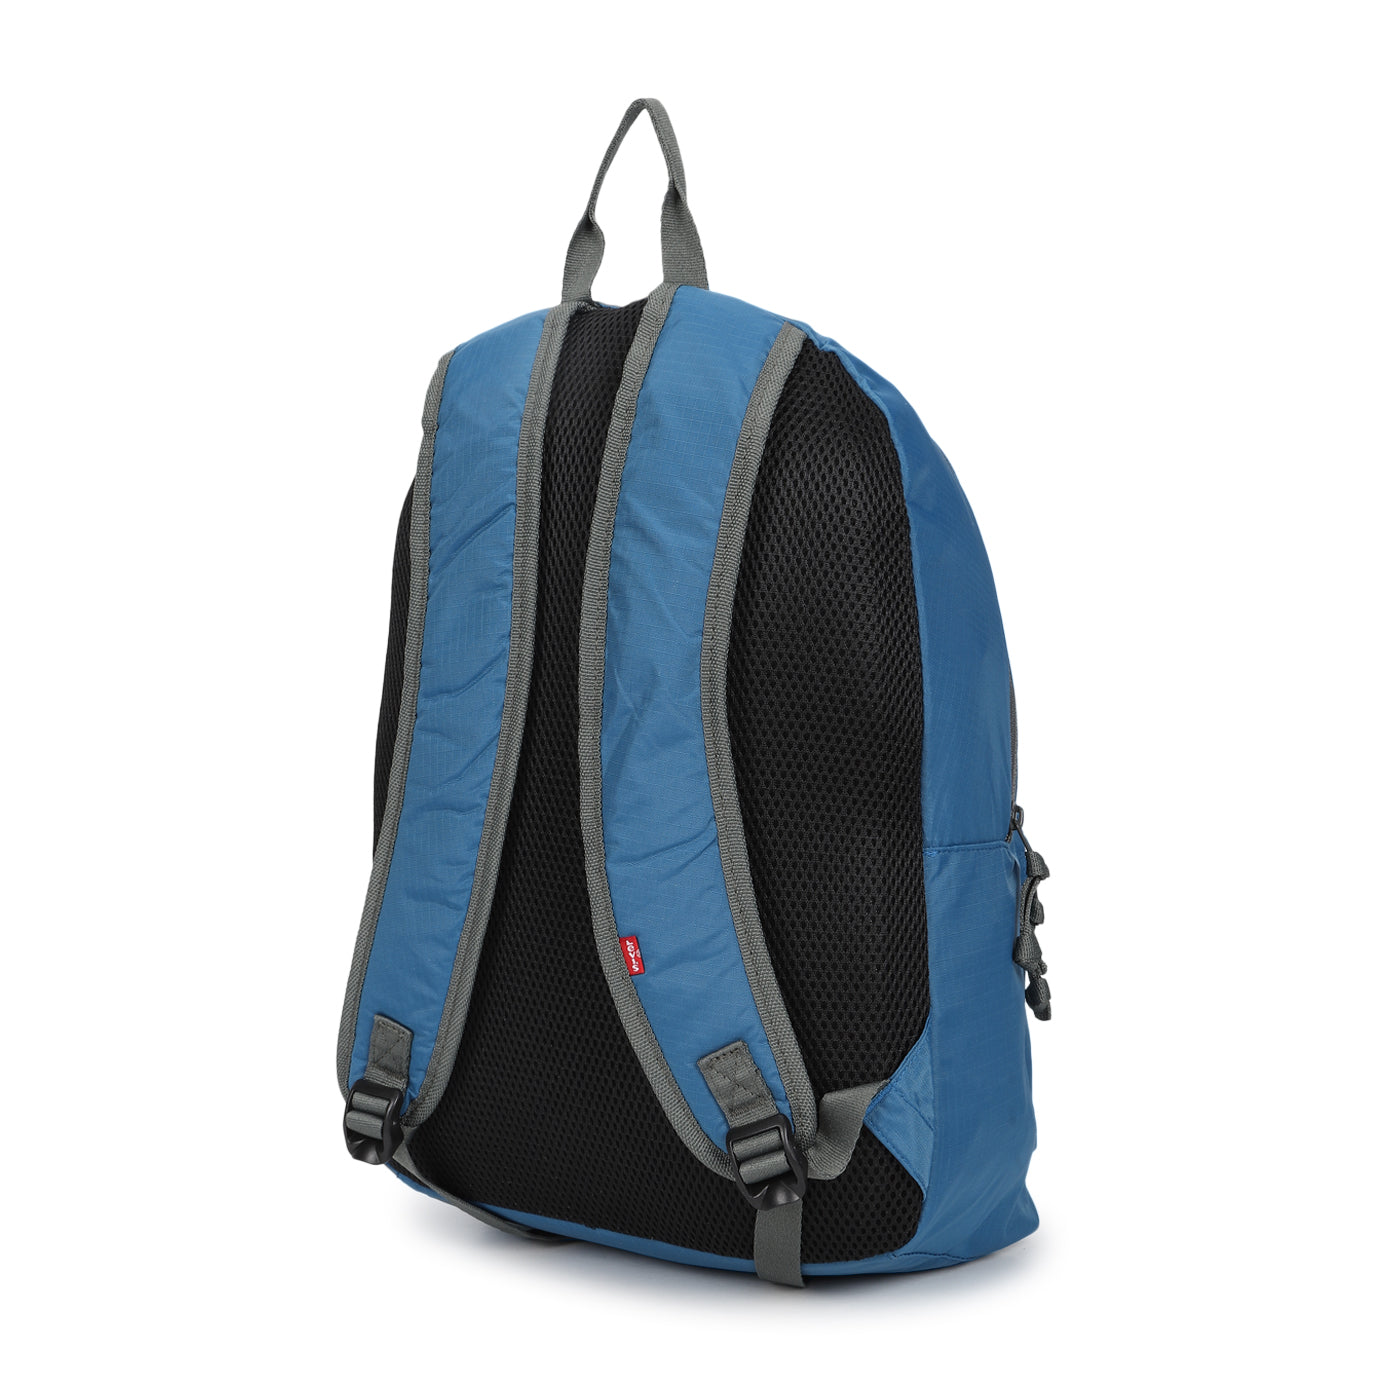 Men's Teal Blue Solid Backpack